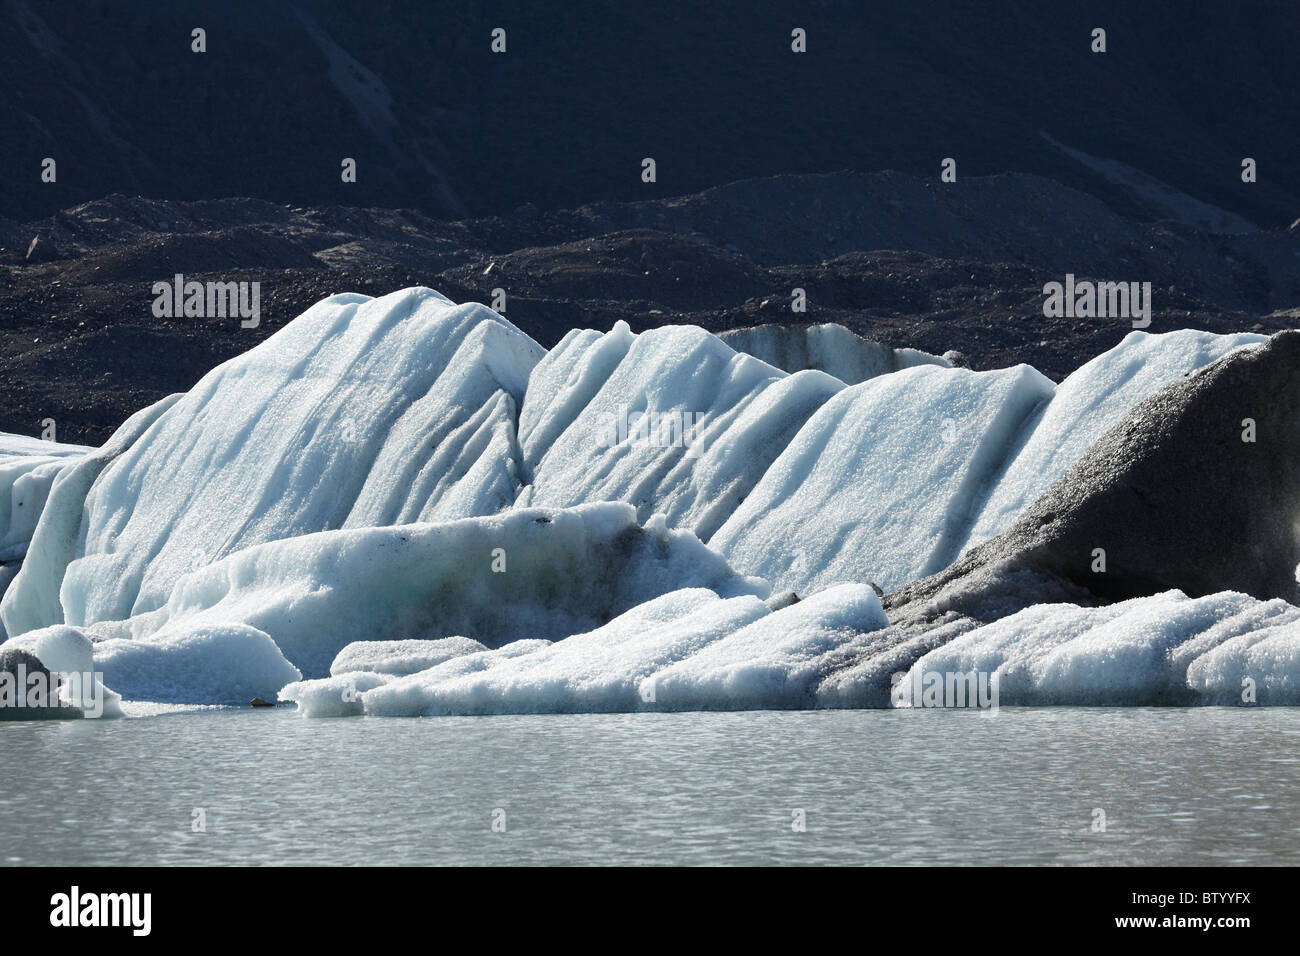 Des icebergs dans le lac Terminal du Glacier Tasman Aoraki / Mt Cook, Parc National, Canterbury, île du Sud, Nouvelle-Zélande Banque D'Images